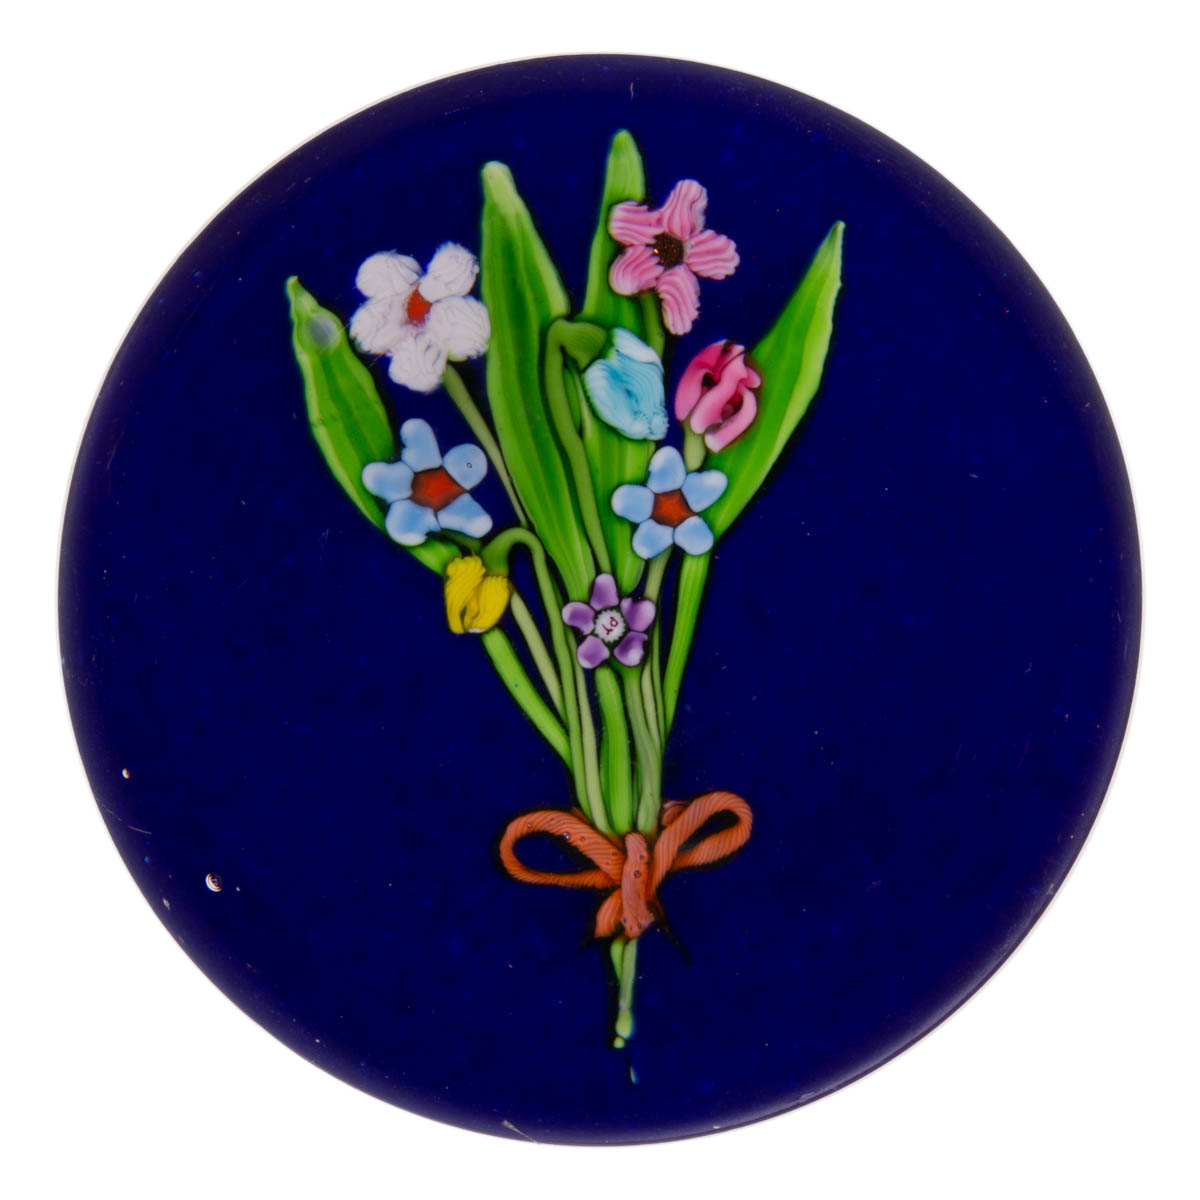 PAUL YSART (SCOTTISH, 1904-1979) FIVE-FLOWER BOUQUET LAMPWORK ART GLASS PAPERWEIGHT